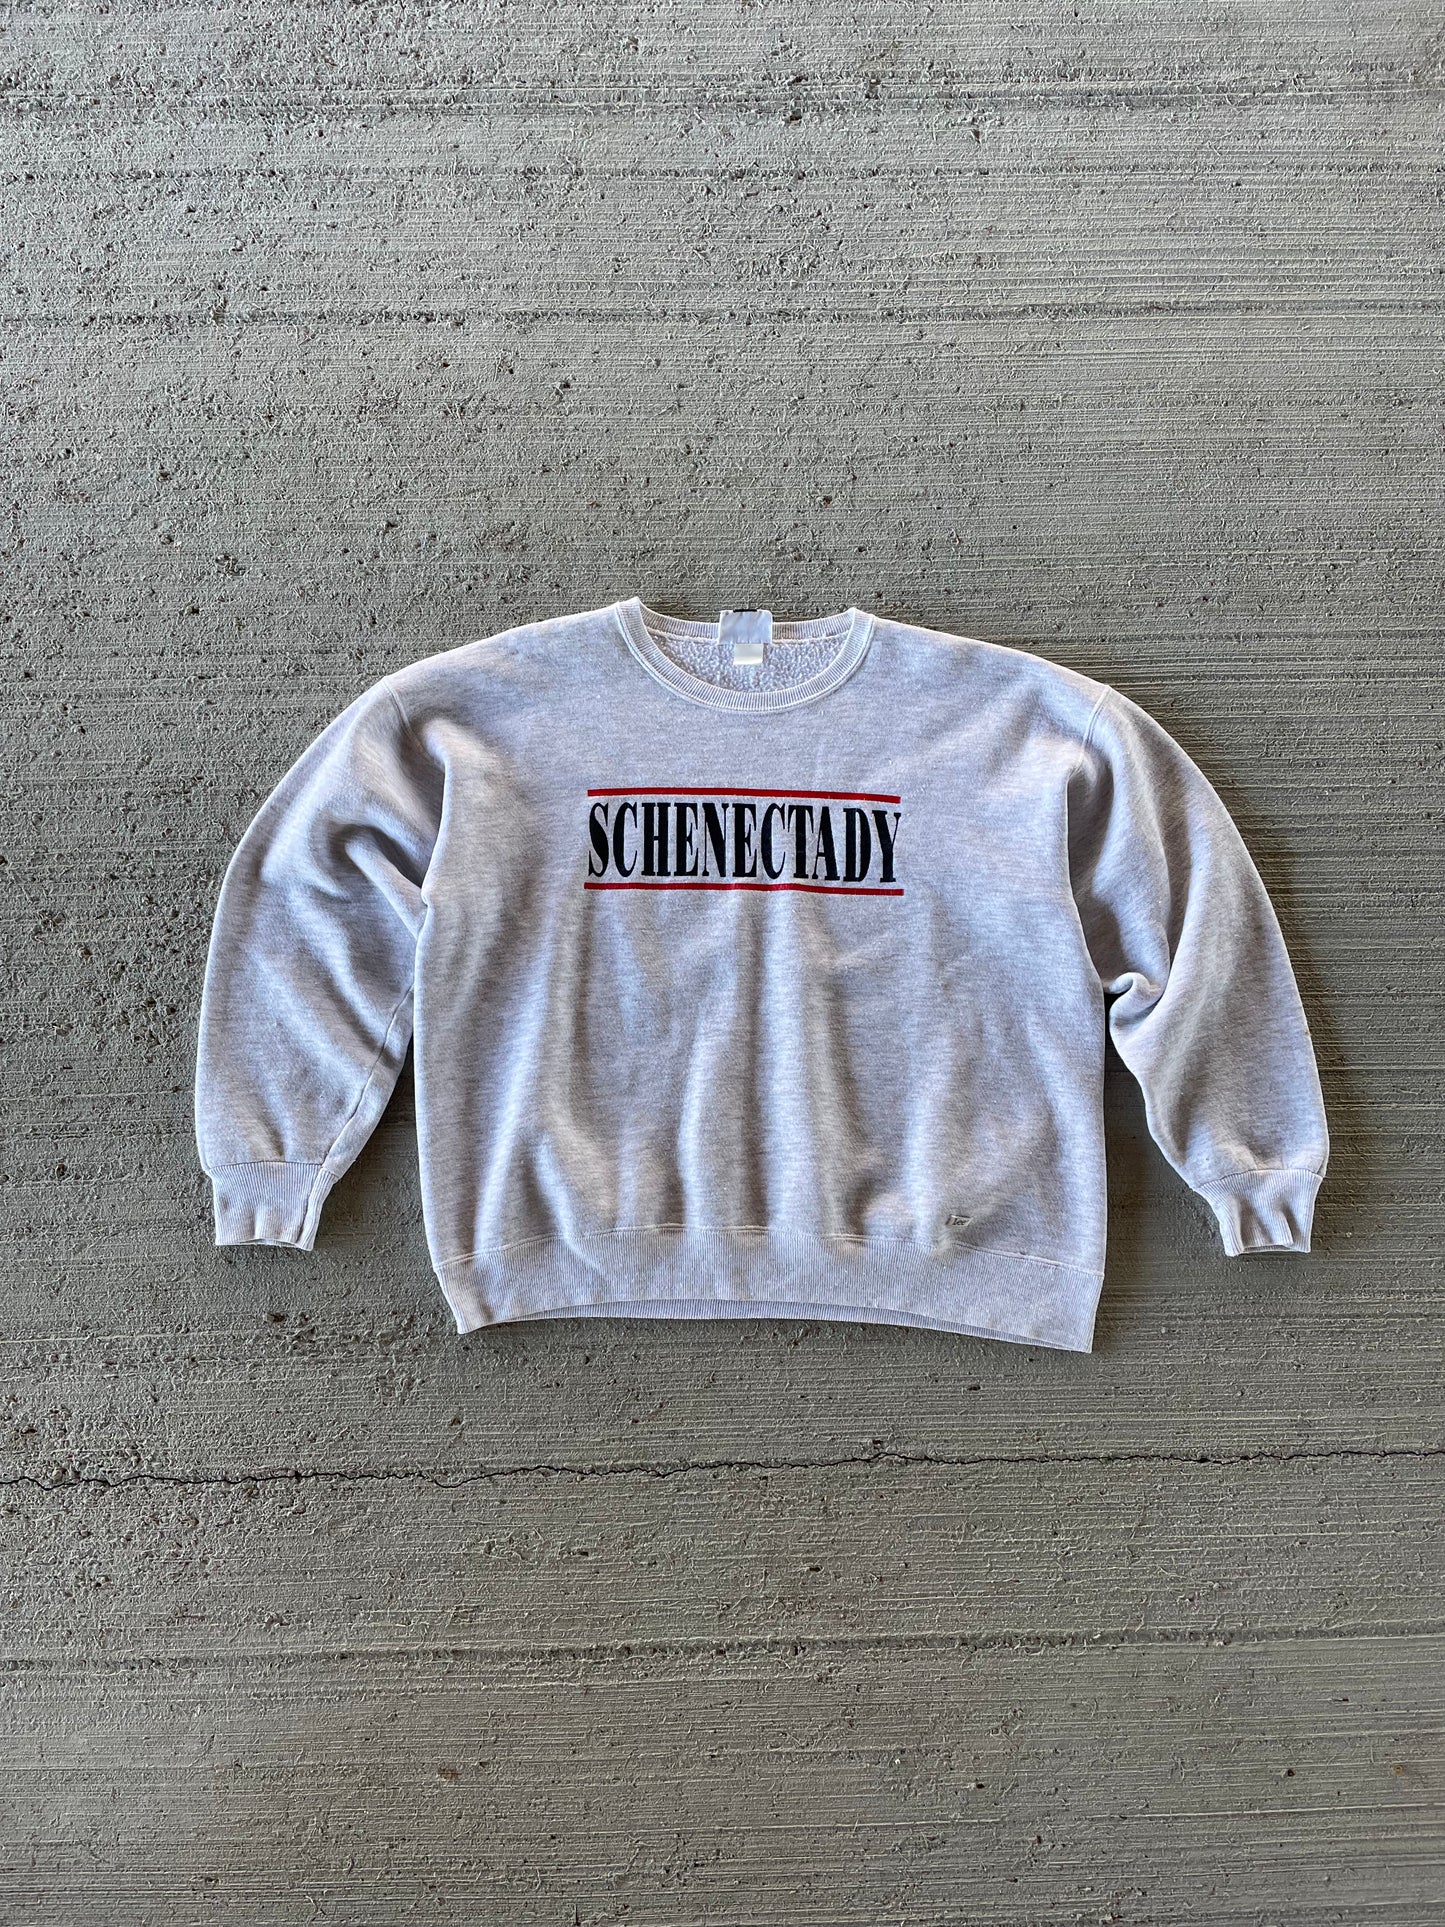 90s Schenectady Sweatshirt